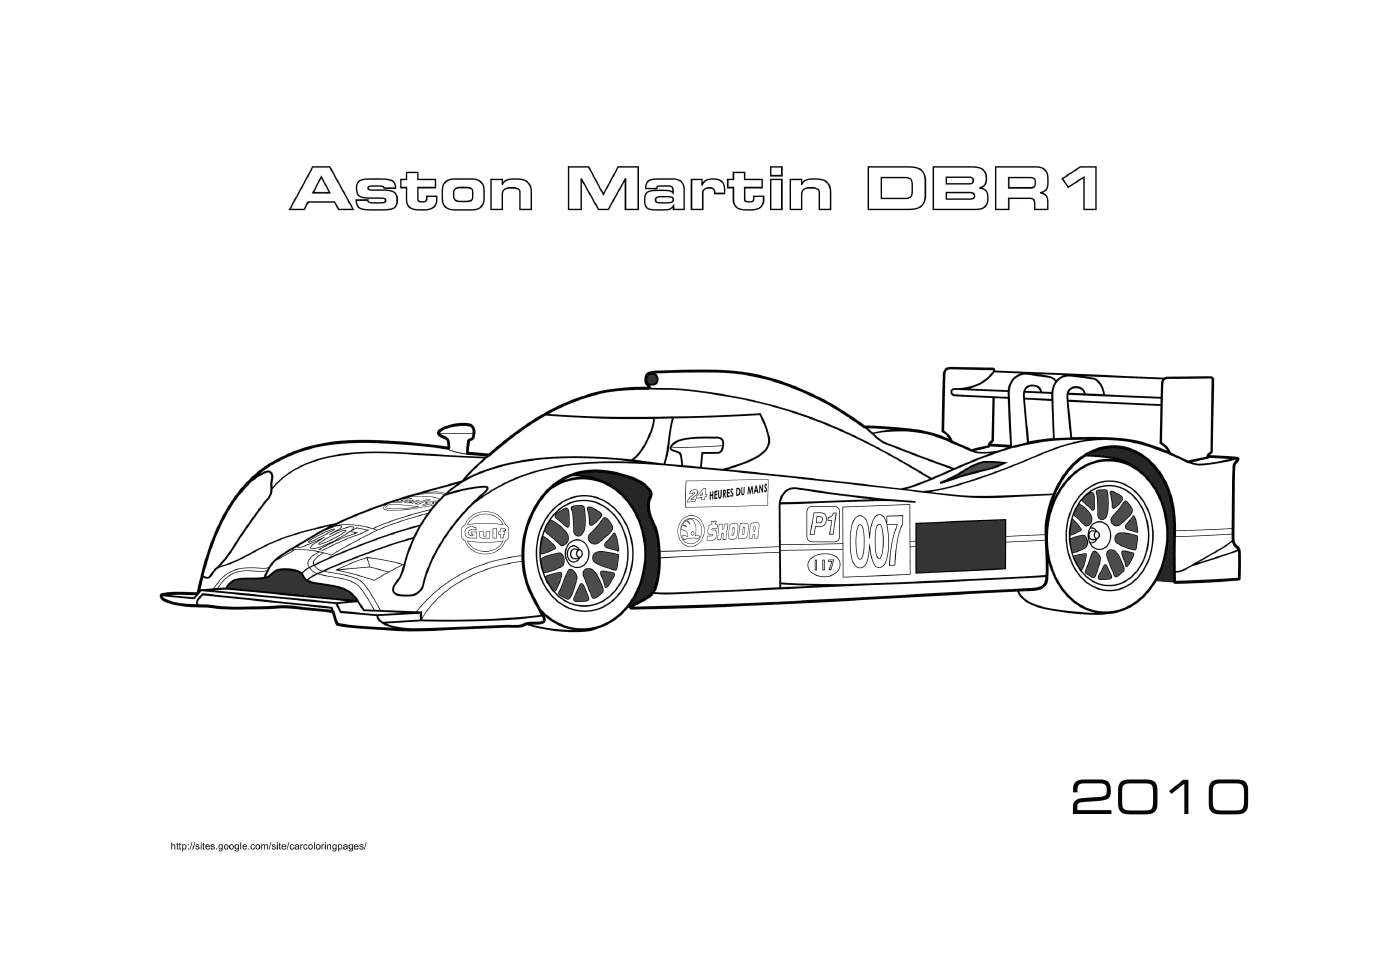  Carros de corrida Aston Martin DBR1 2010 